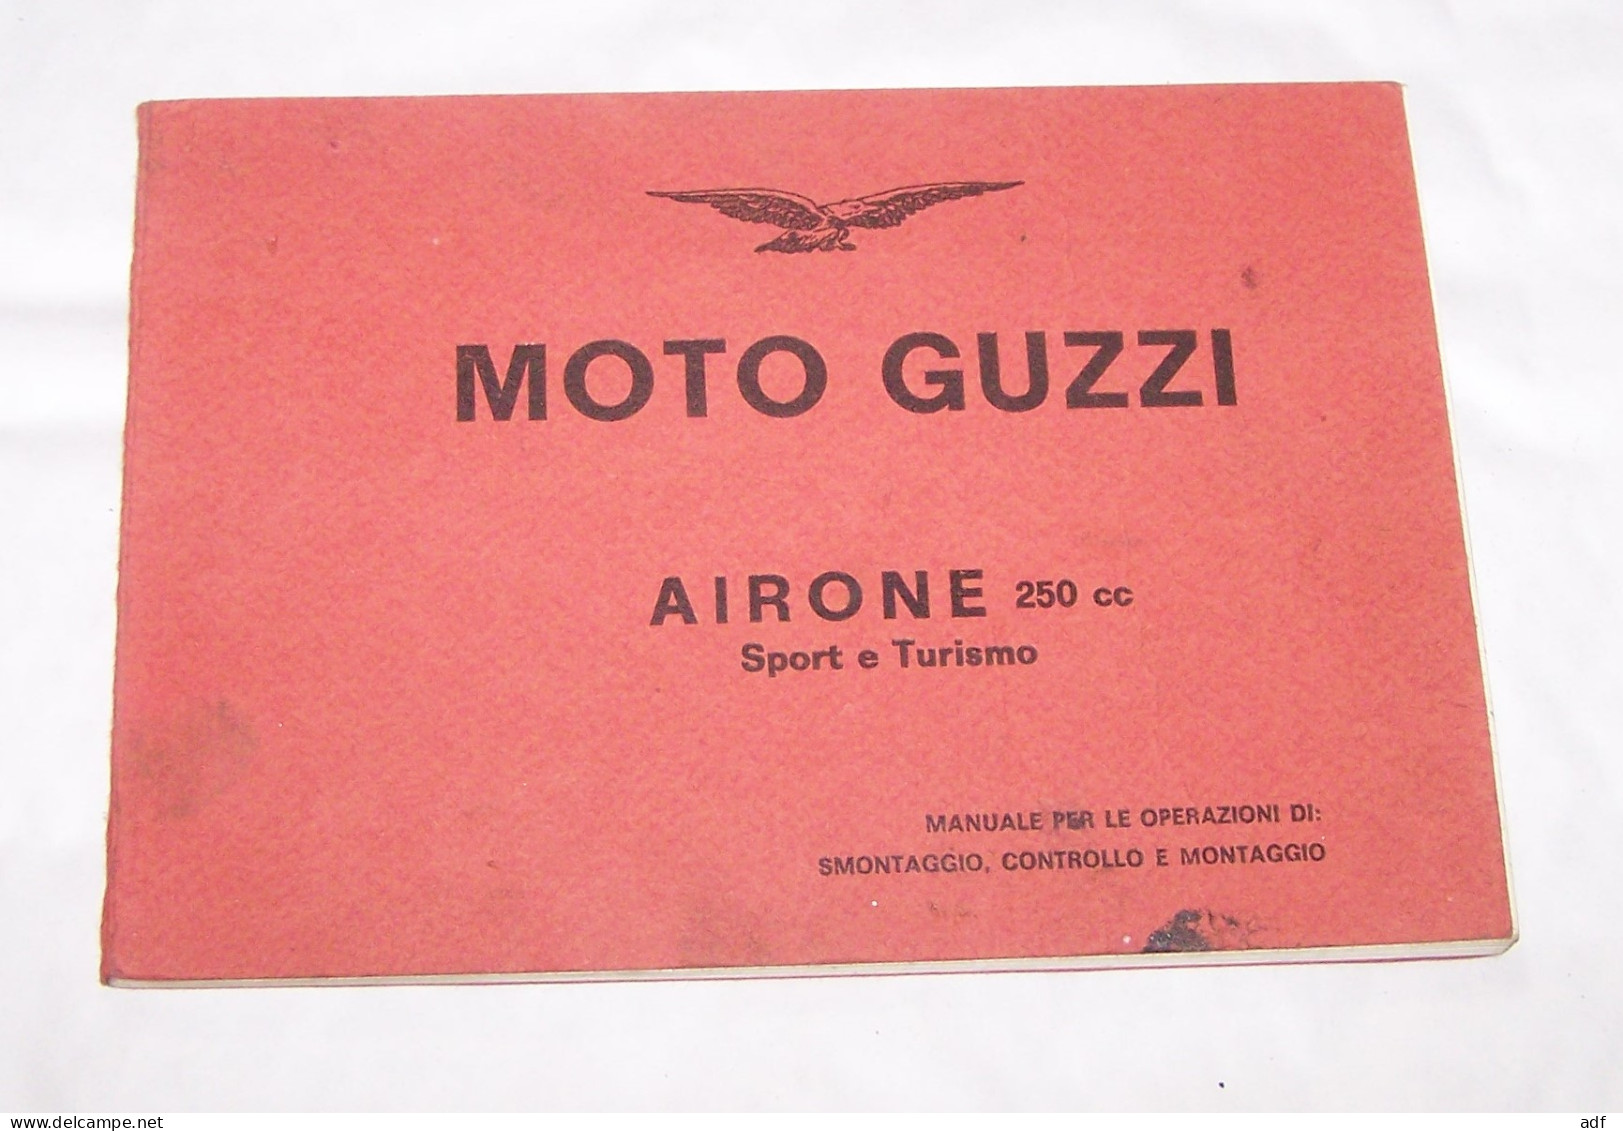 MOTO GUZZI AIRONE 250 CC SPORT ET TURISMO MANUALE PER LE OPERAZIONI DI SIMONTAGGIO, CONTROLLO E MONTAGGIO, MANUEL - Motor Bikes